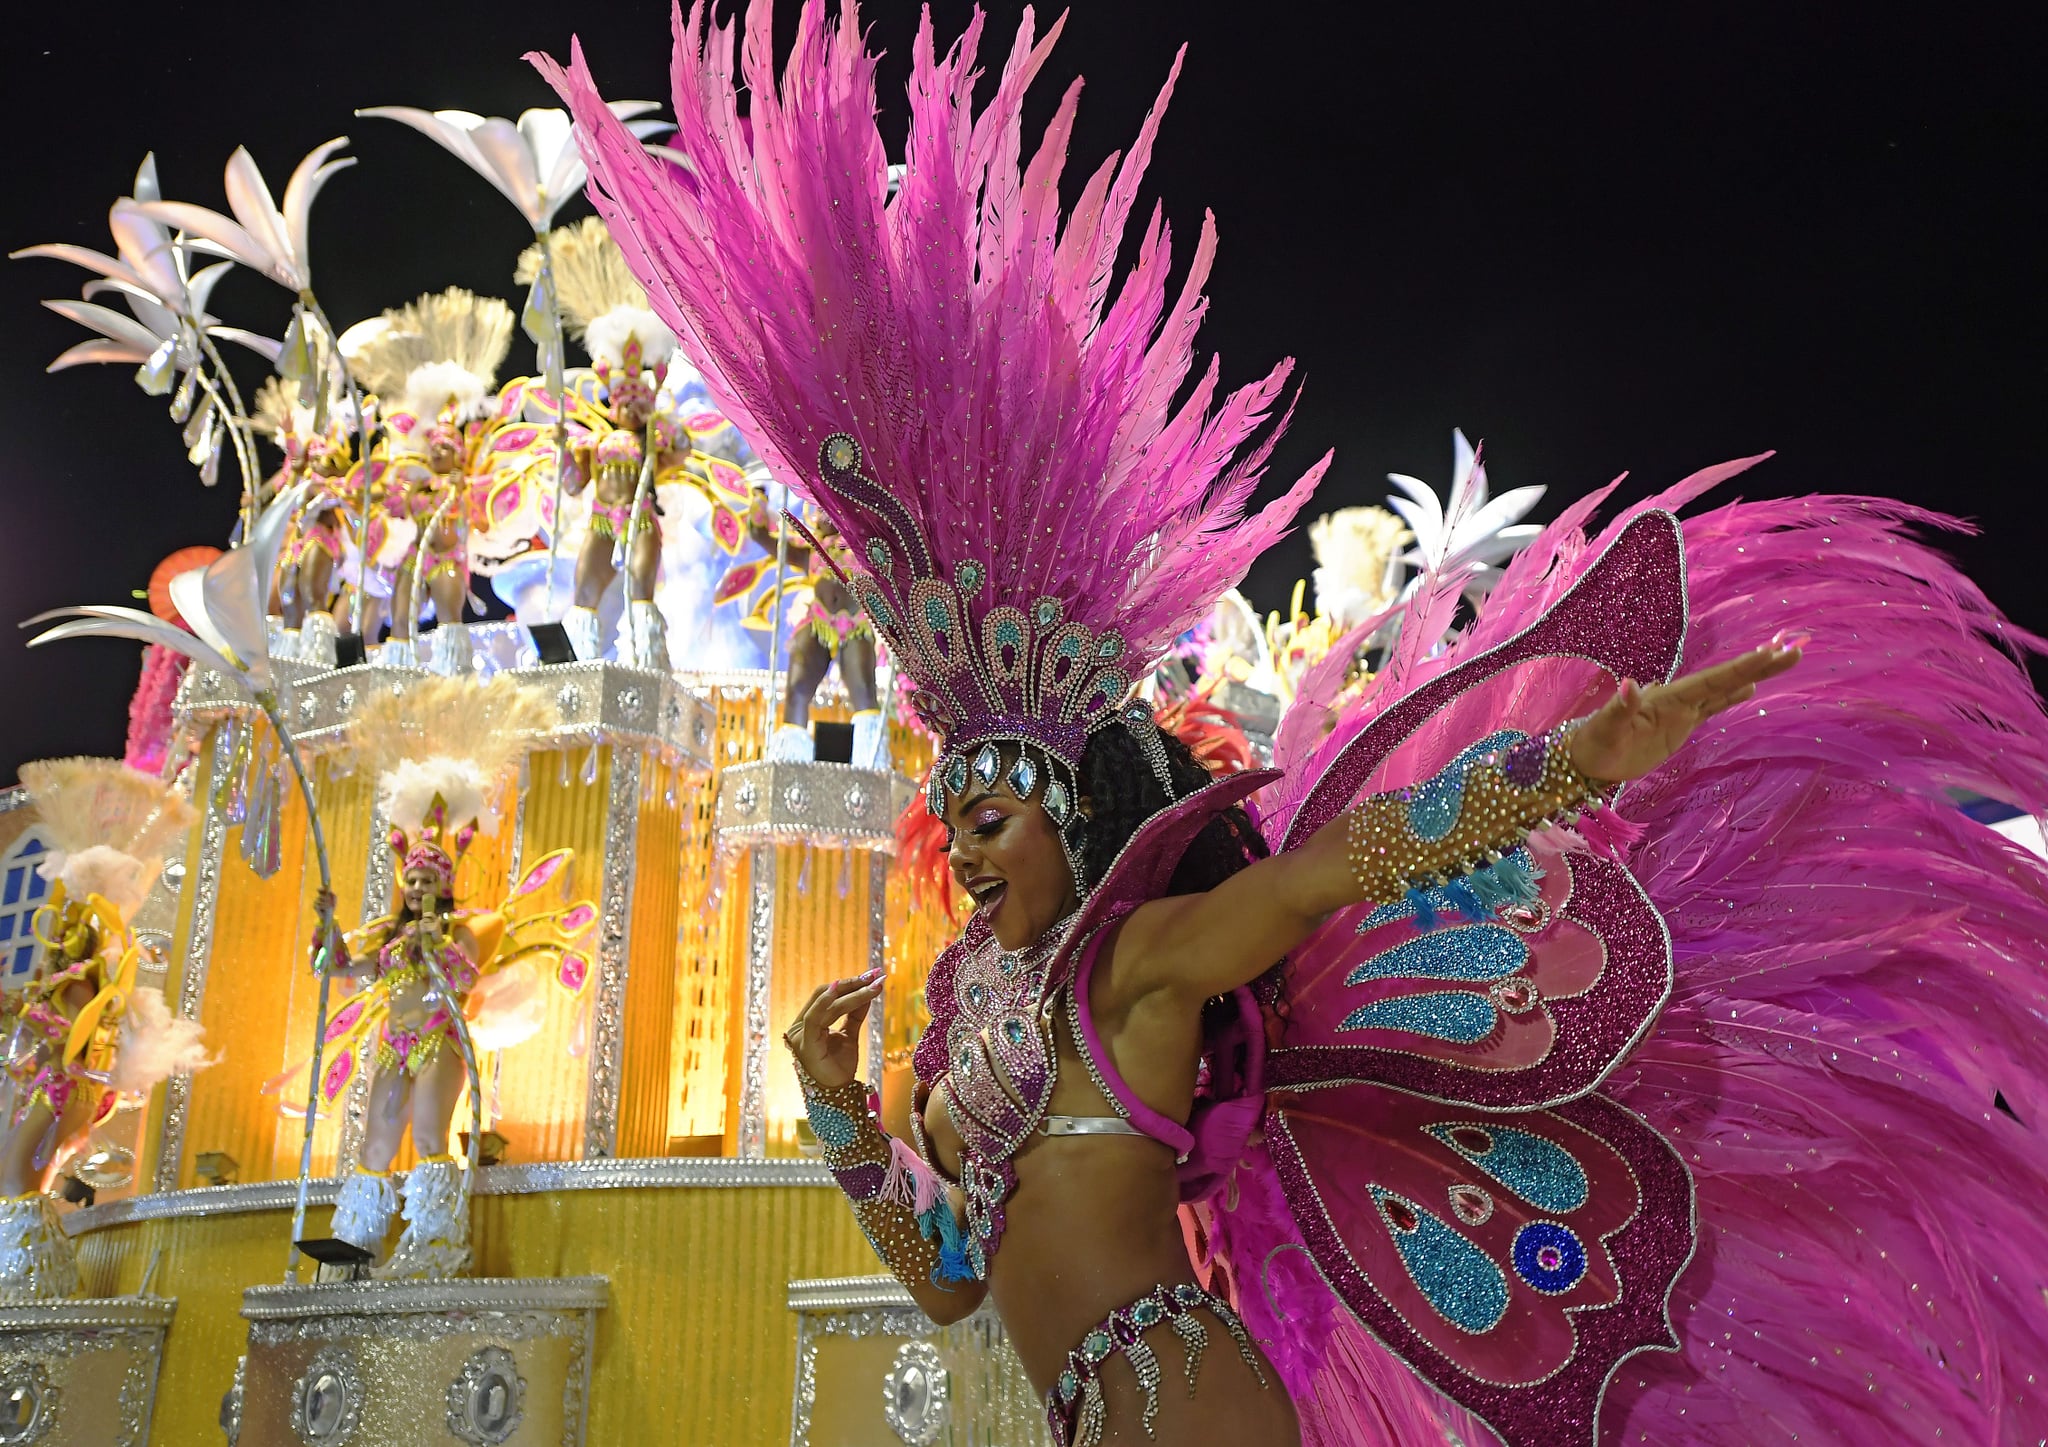 Carnival in Brazil: Scenes from the Sambadromes - February 14